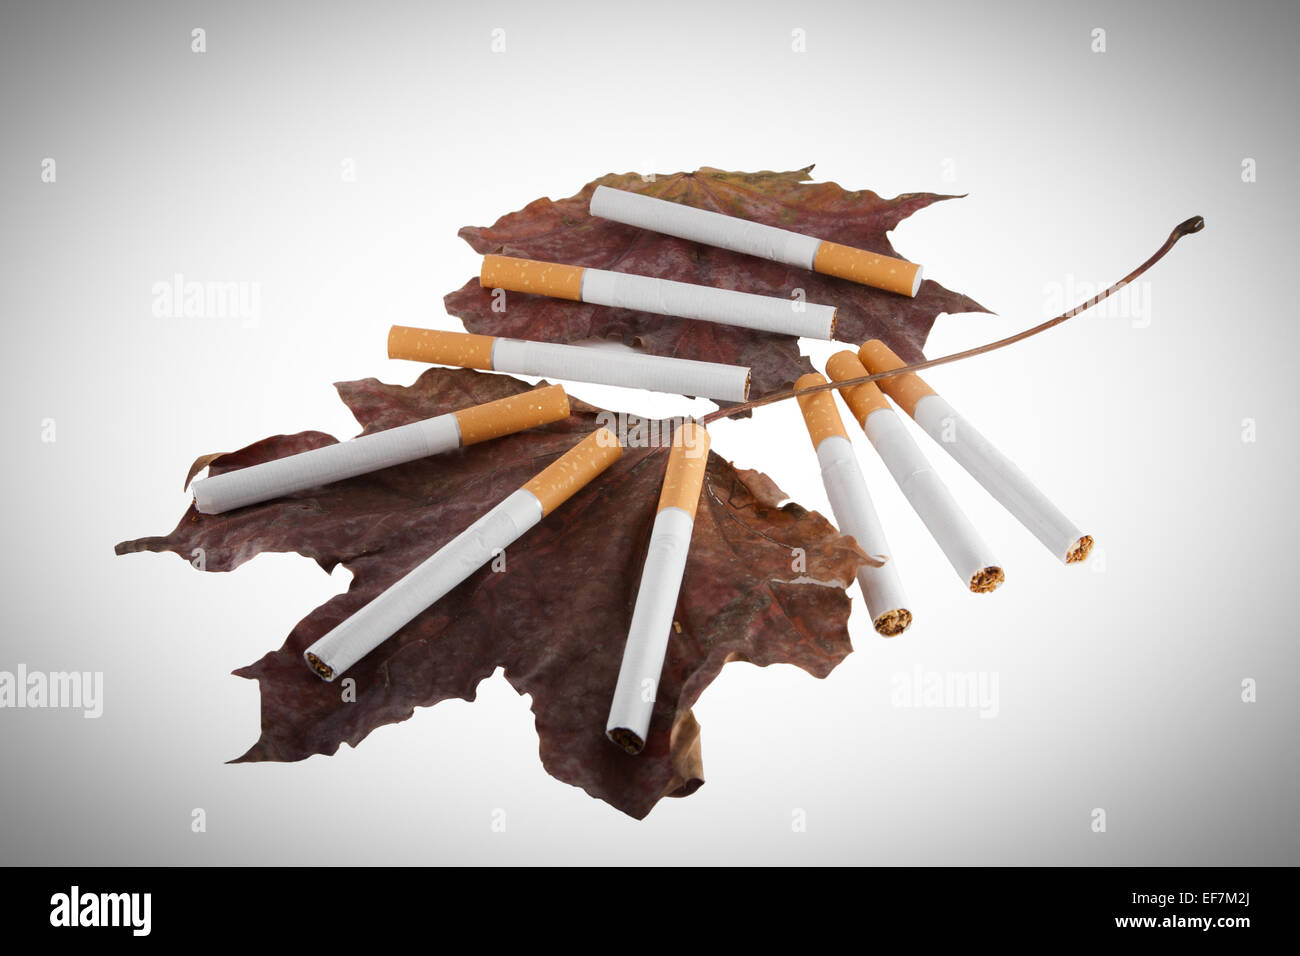 Ancora in vita delle sigarette con filtro e foglie secche Foto Stock